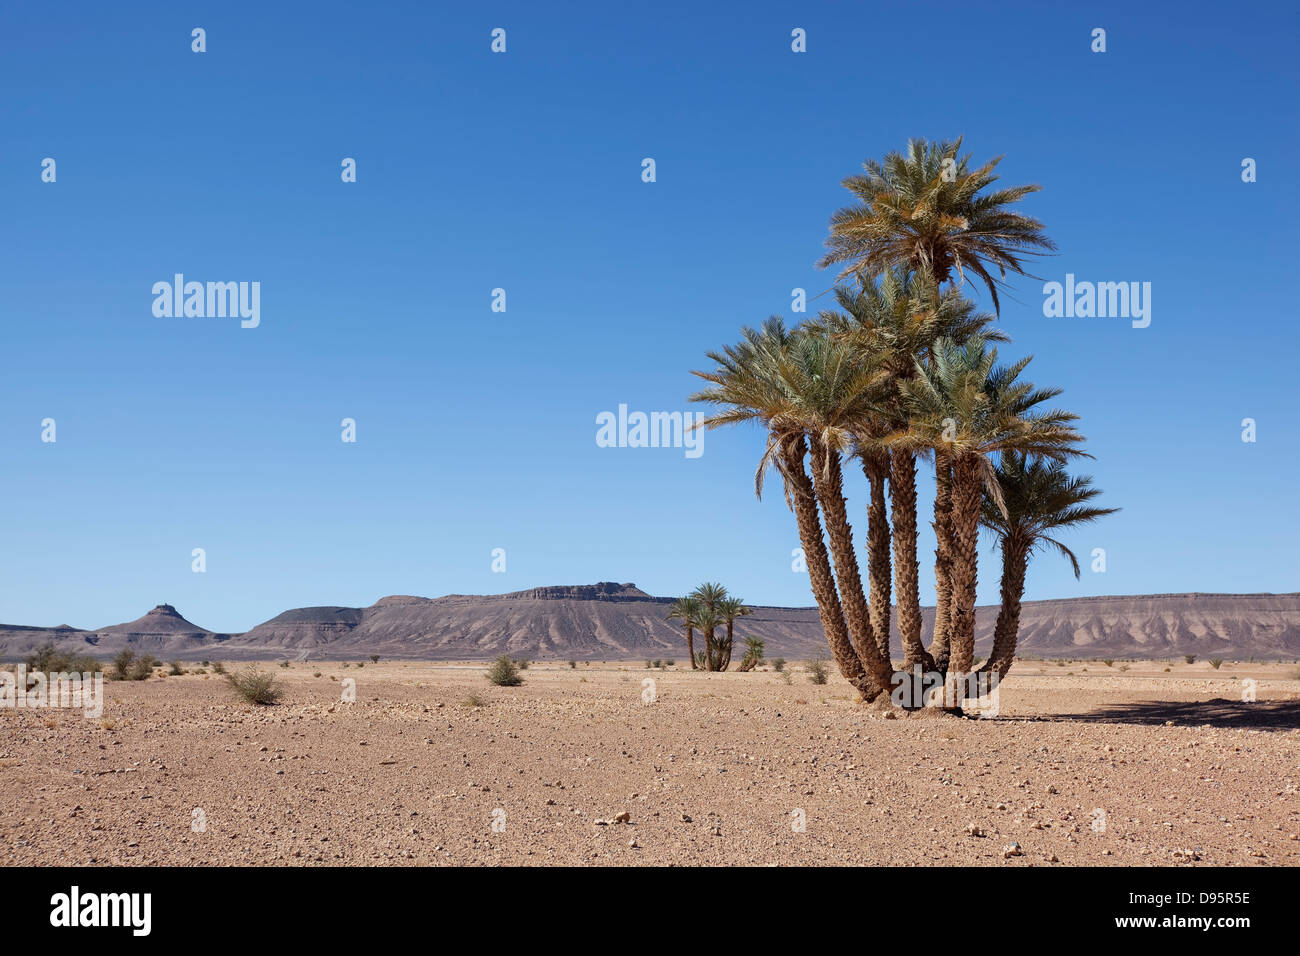 Wüstenlandschaft mit Dattelpalmen und Berge in der Nähe von Tagounite, Wüste Sahara, Marokko. Stockfoto